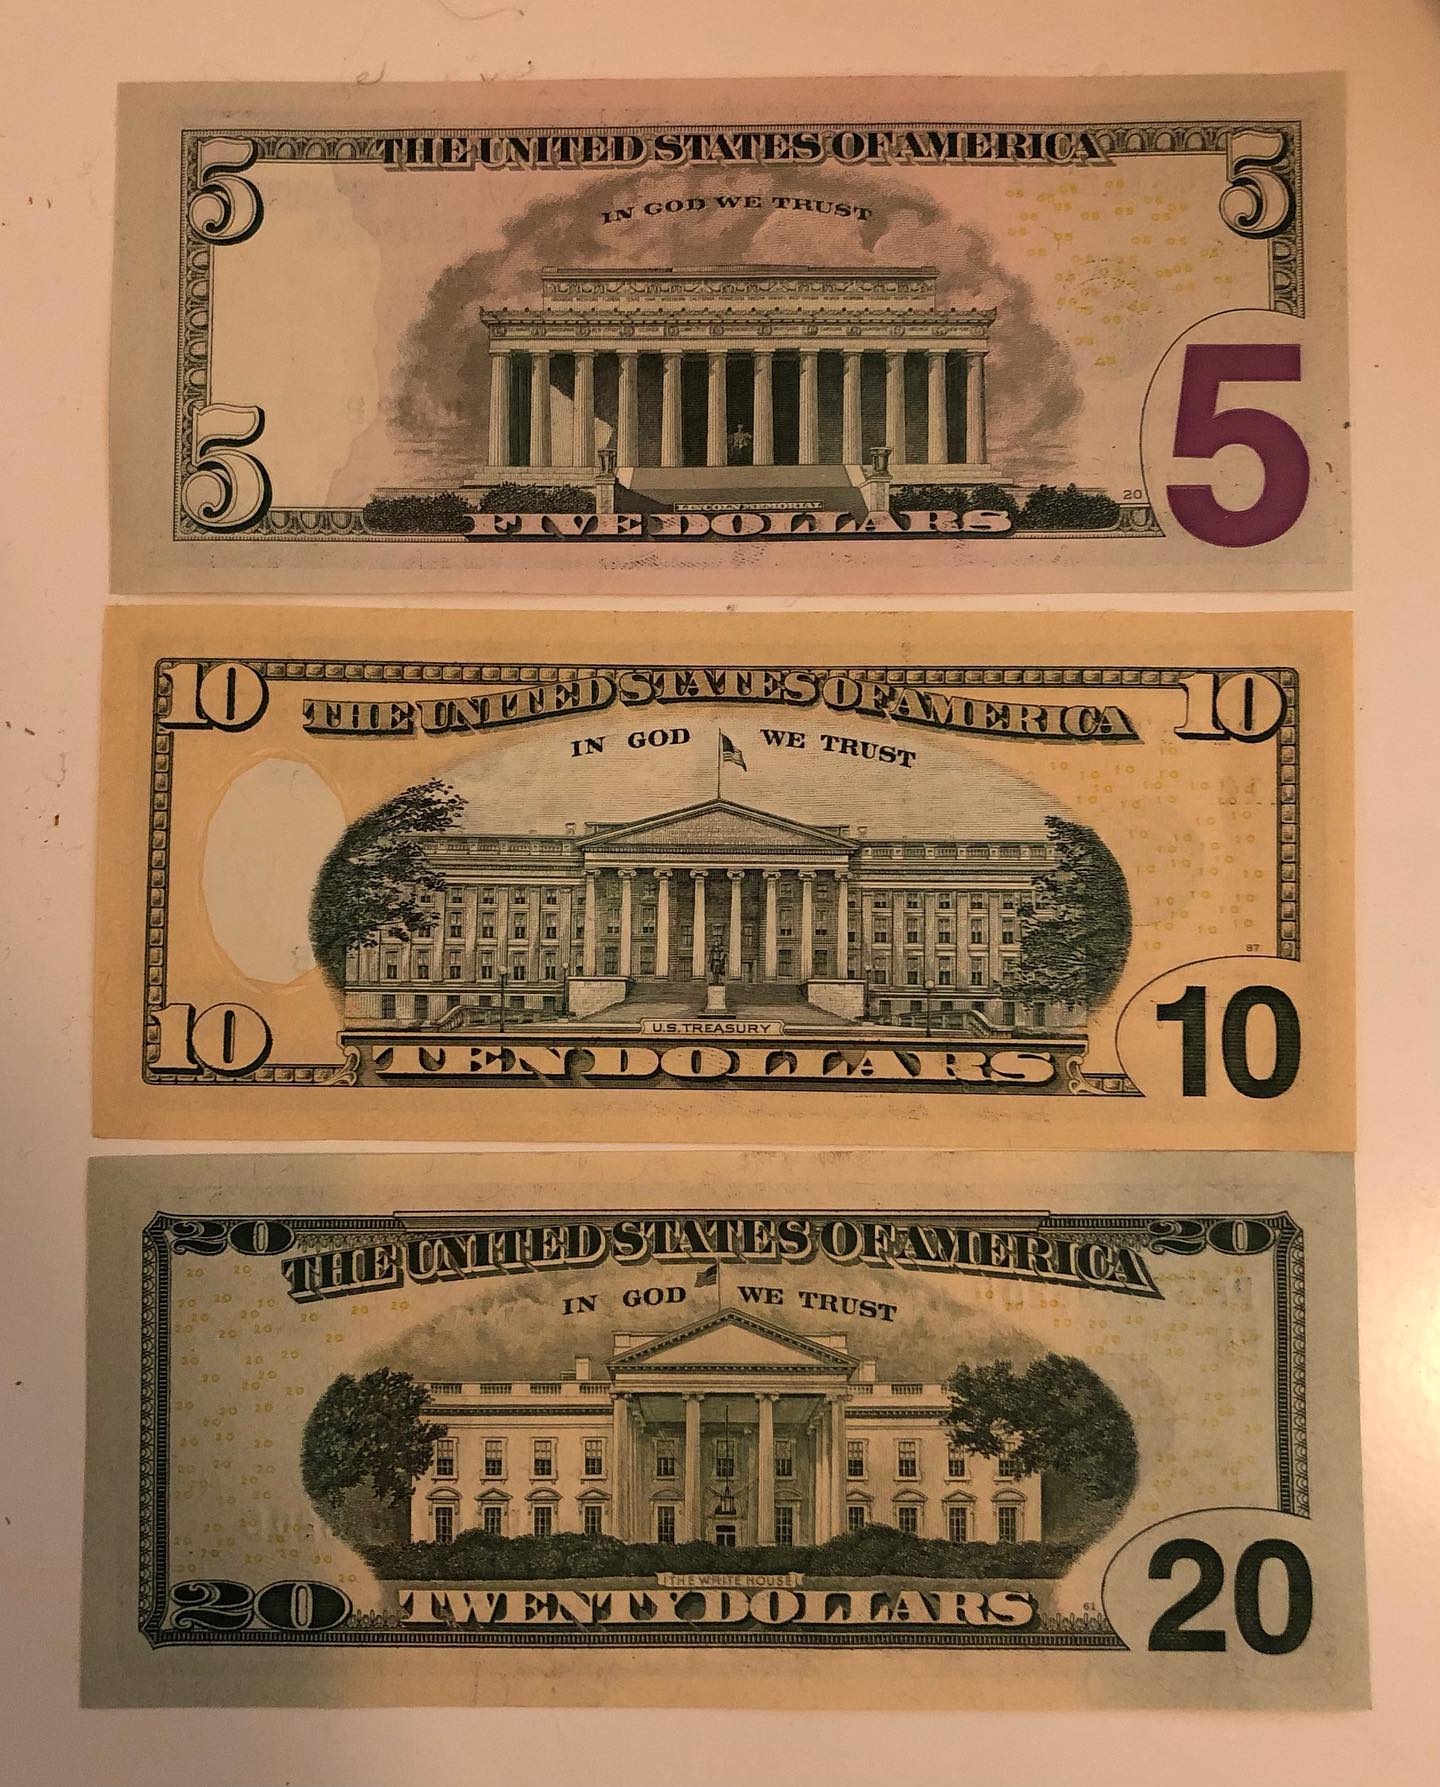 Dollars sehen von hinten echt aus wie Spielgeld 😳